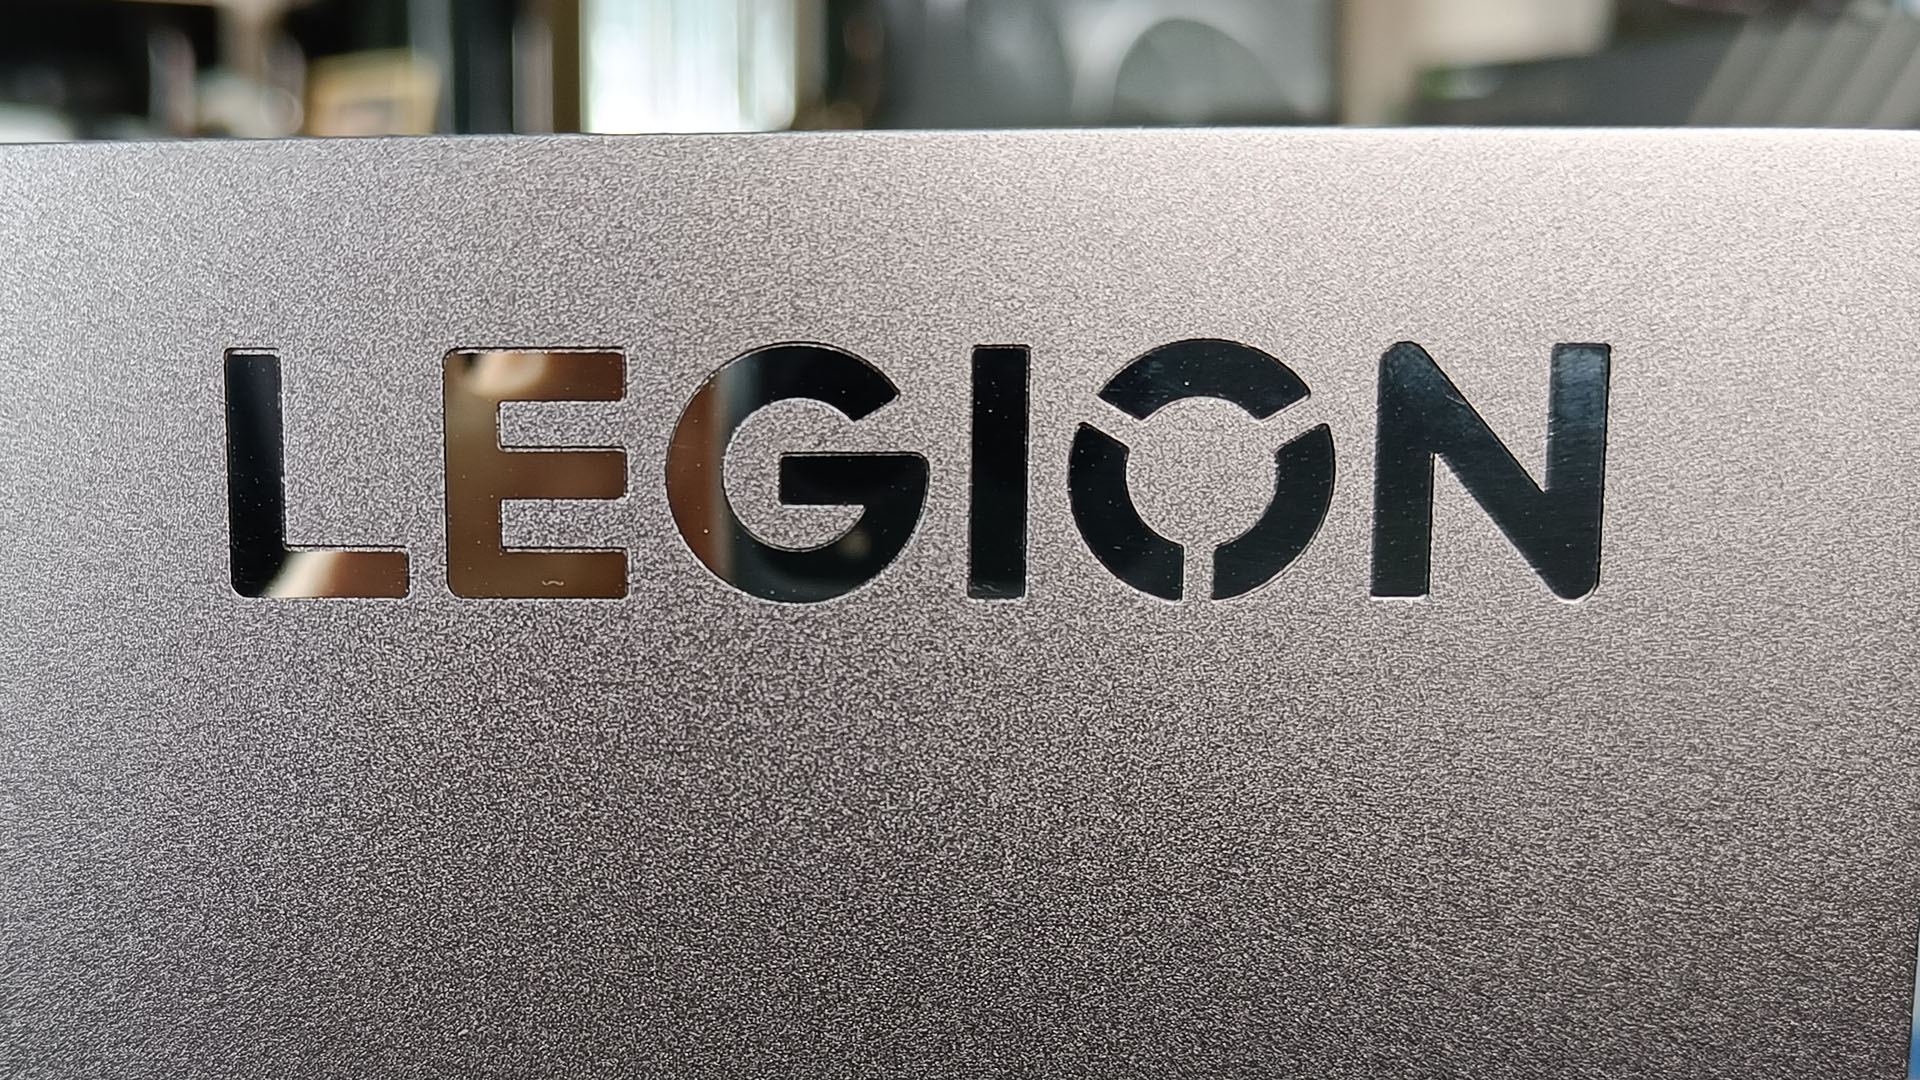 Legion Slim 7i Gen 7, Lenovo mette Core i7-12700H e RTX 3060 in uno spessore contenuto